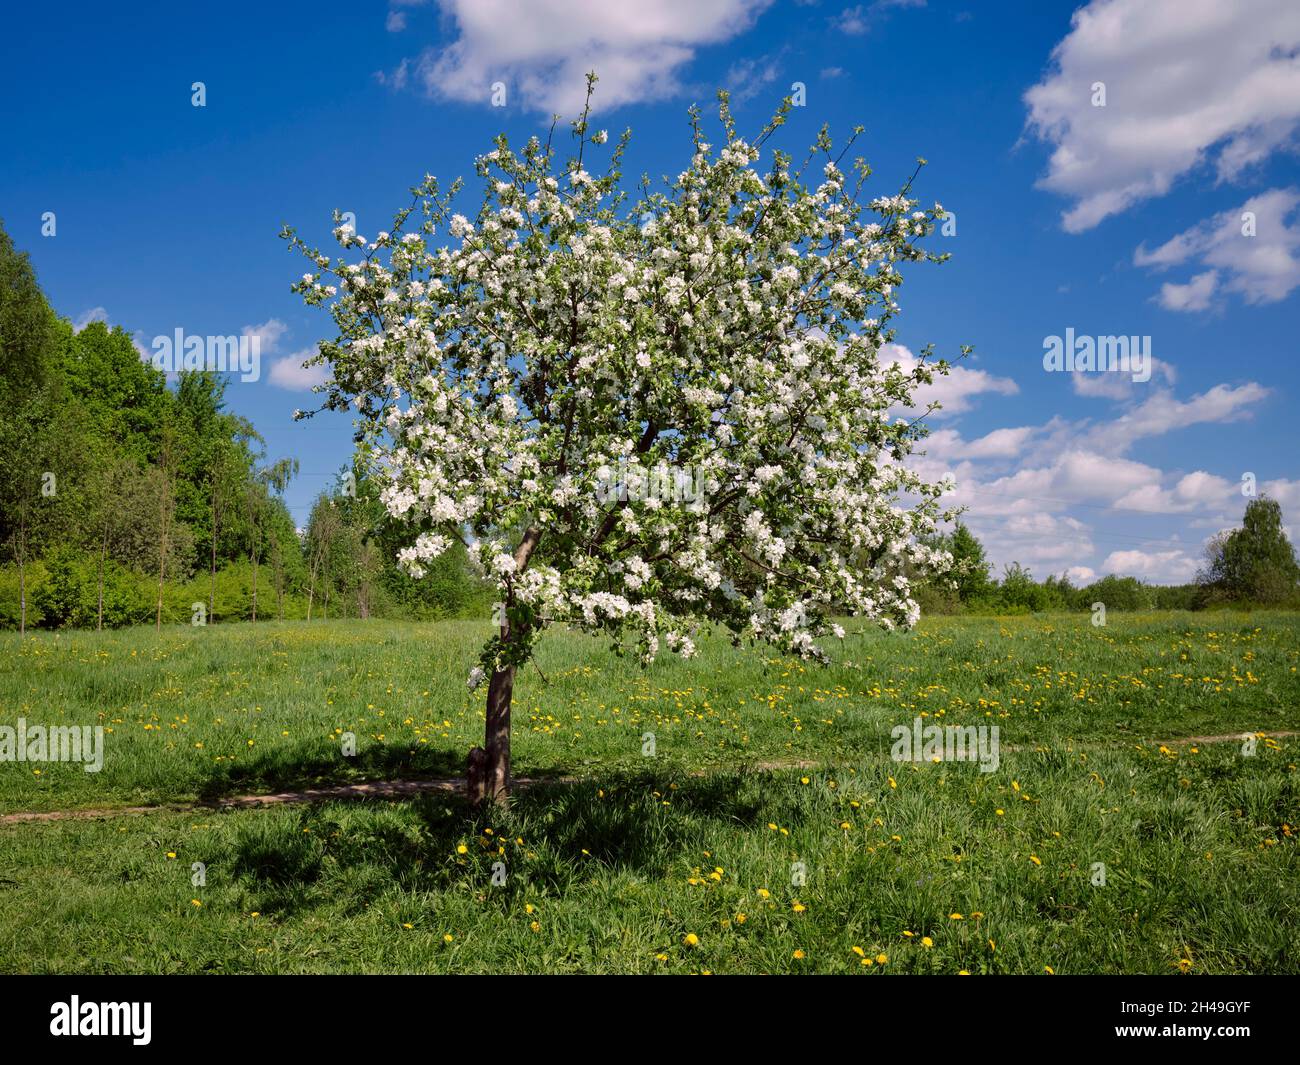 Single apple tree (Malus domestica) in blossom in spring. Bitsevski Park (Bitsa Park), Moscow, Russia. Stock Photo